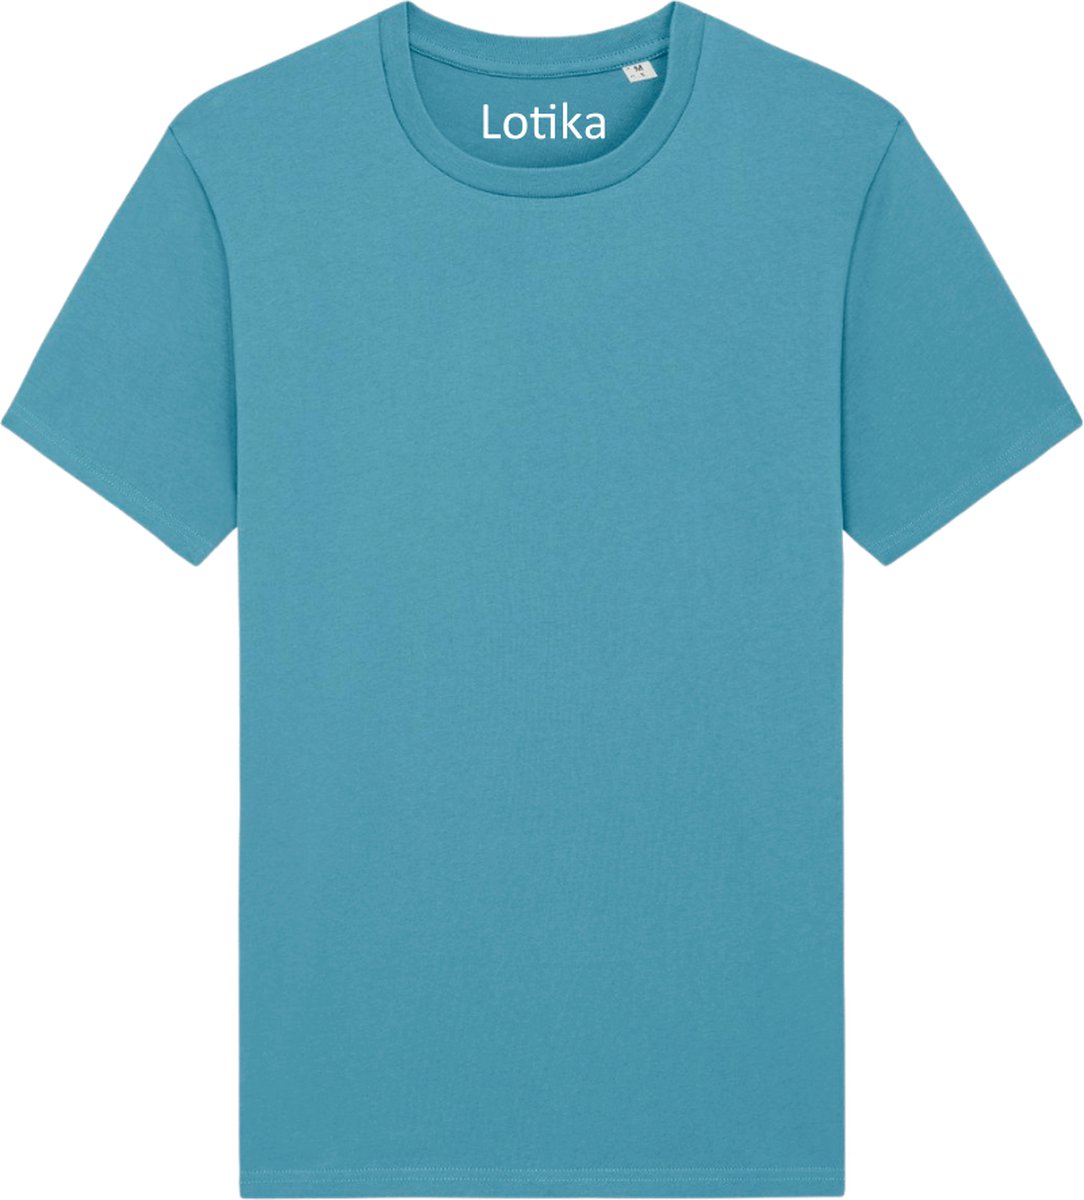 Lotika Daan T-shirt biologisch katoen atlantic blue